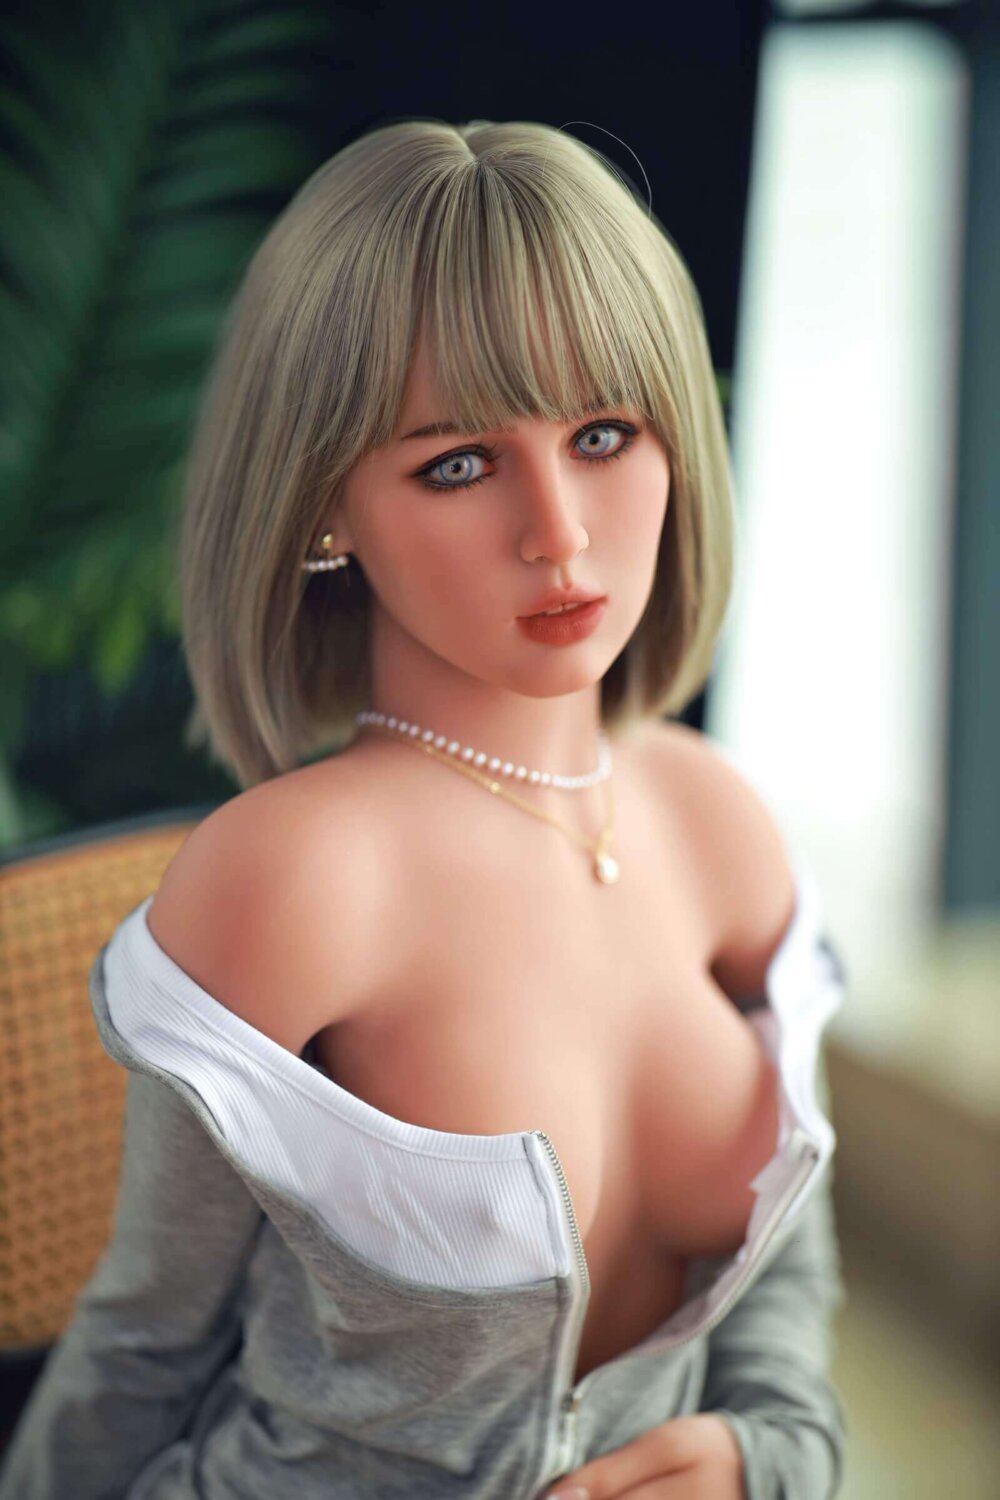 Sex Doll mit blonden Fransen, graues Sweatshirt mit Brüsten, Perlenkette und Ohrringe, blaue Augen.